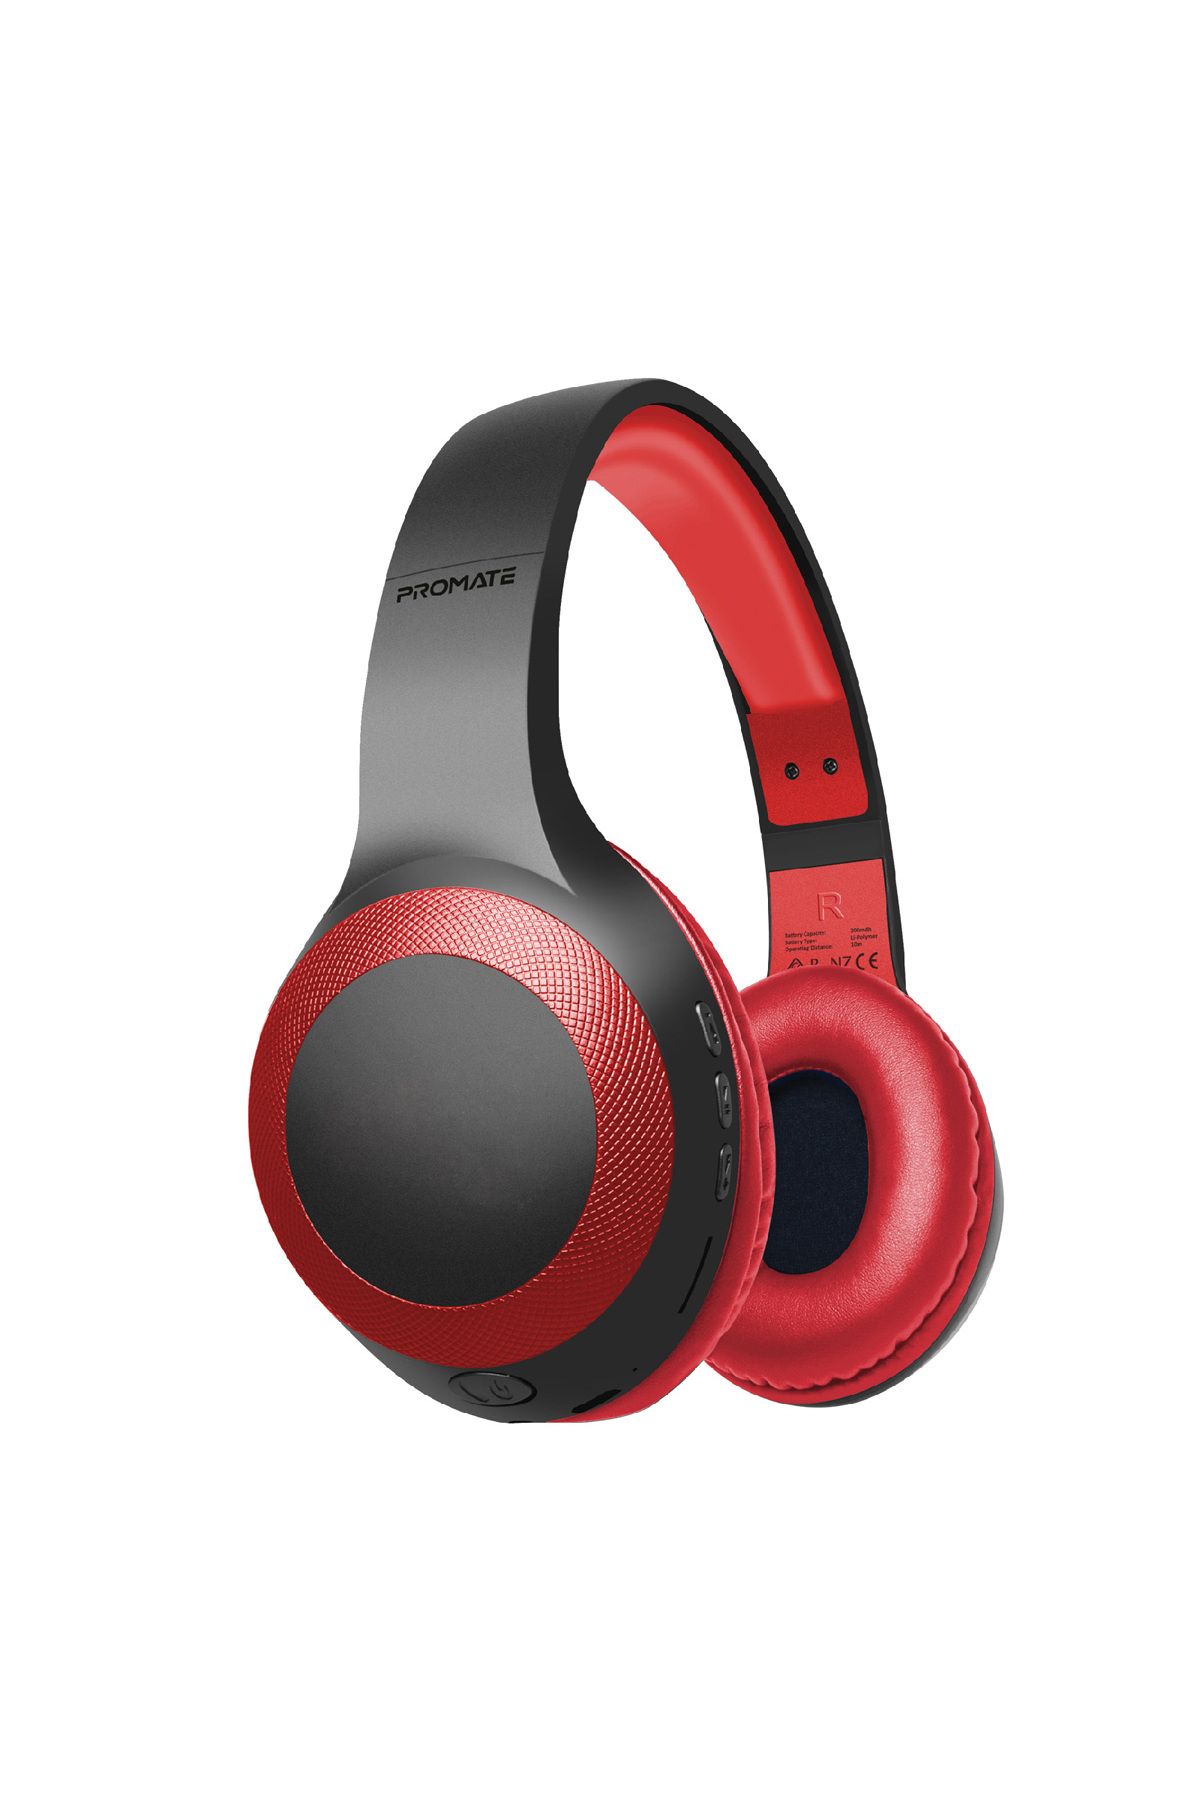 Promate LaBoca Derin Bas Hi-Fi Ses Kablolu/Kablosuz Kulaküstü Mikrofonlu Bluetooth Kulaklık Kırmızı